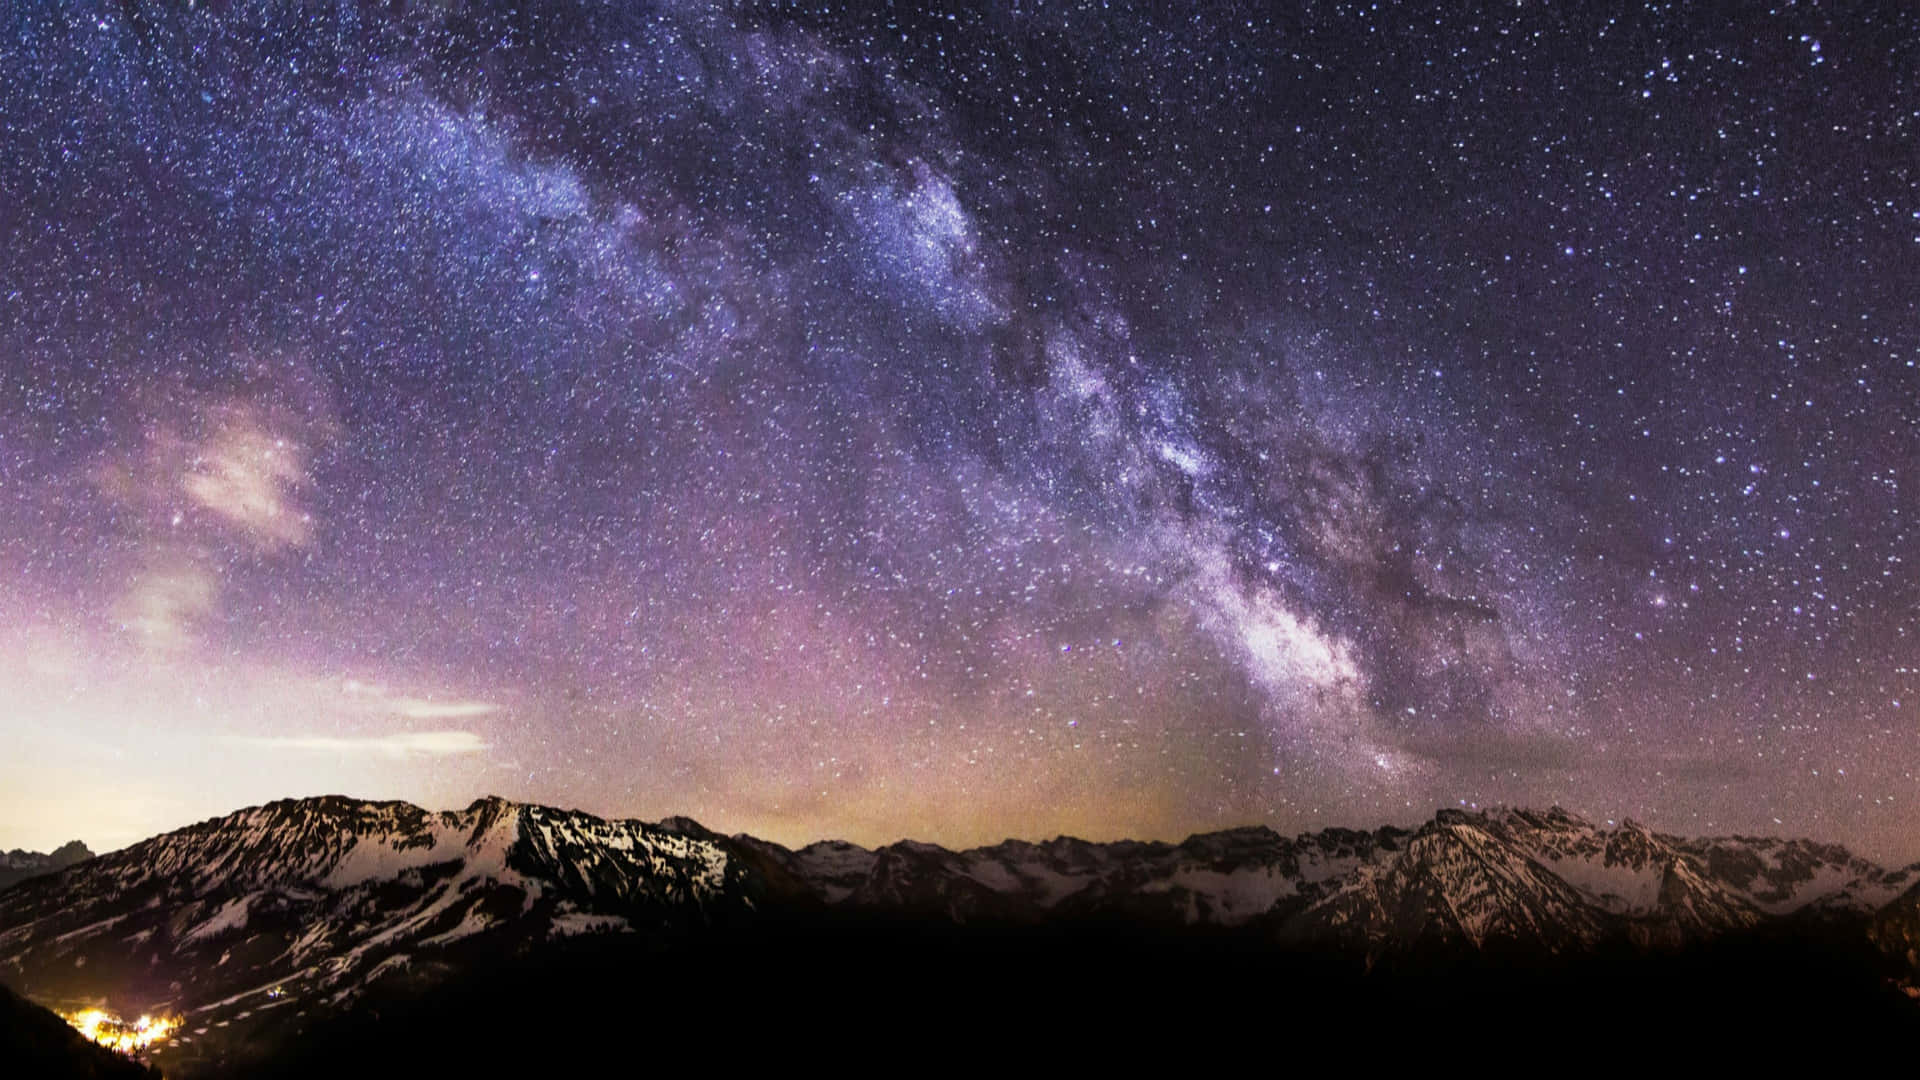 Unacadena Montañosa Iluminada Con Estrellas Y La Vía Láctea.